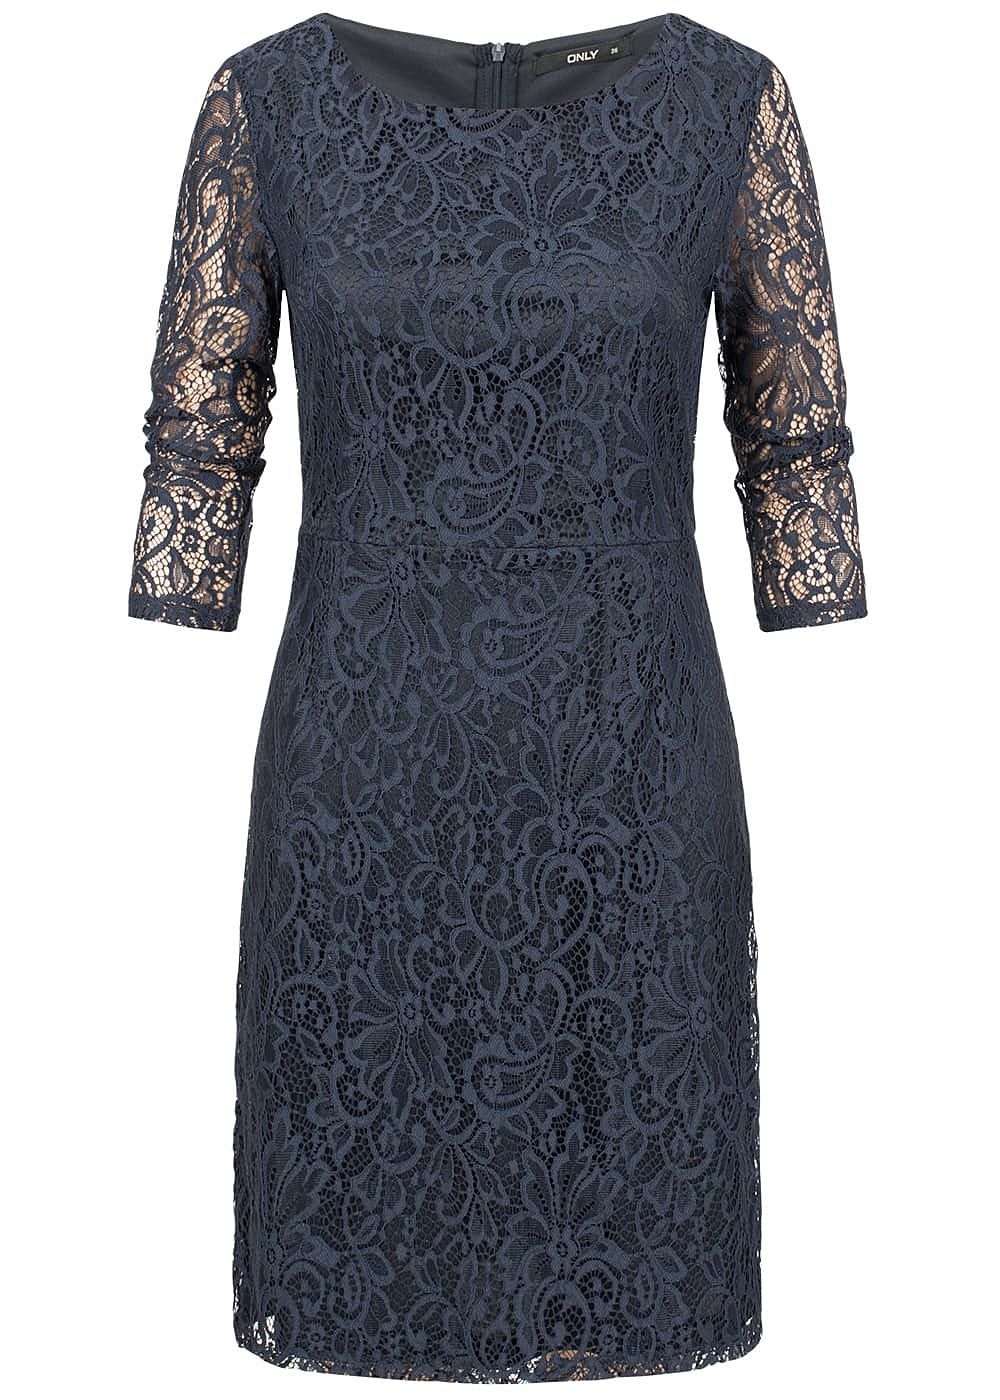 Designer Ausgezeichnet Kleid Blau Spitze Vertrieb10 Luxurius Kleid Blau Spitze Spezialgebiet